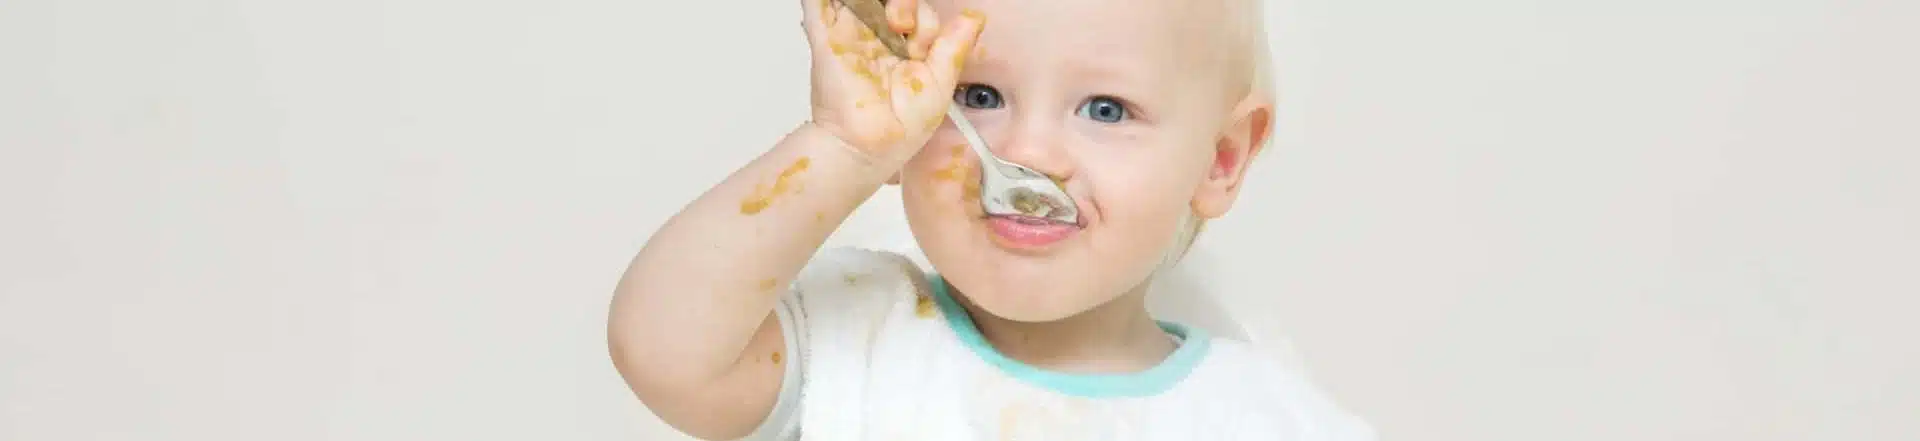 תינוק אוכל מכפית